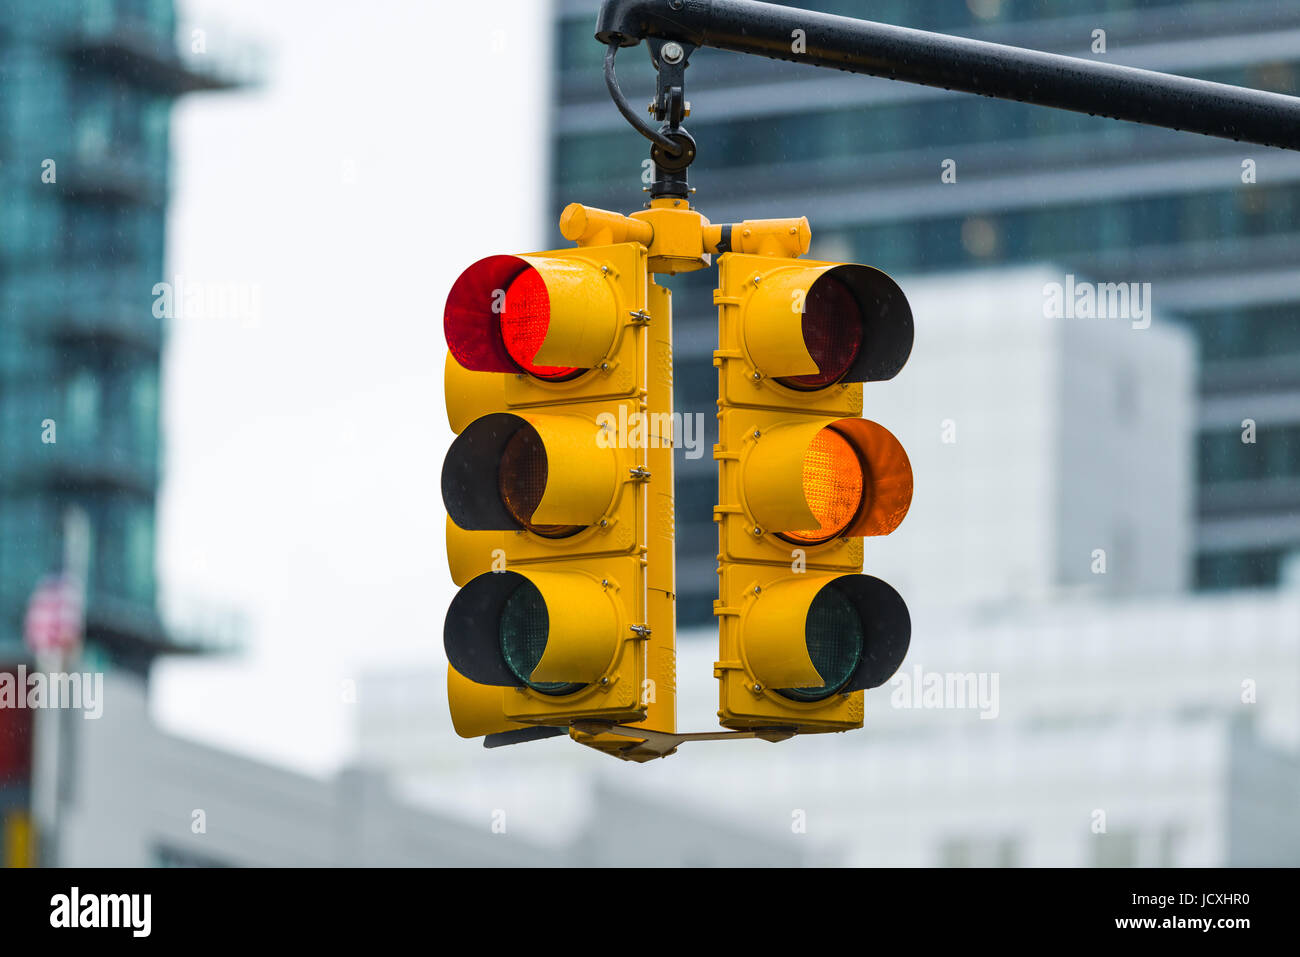 Gelbe und rote Ampeln, New York, Vereinigte Staaten von Amerika Stockfoto